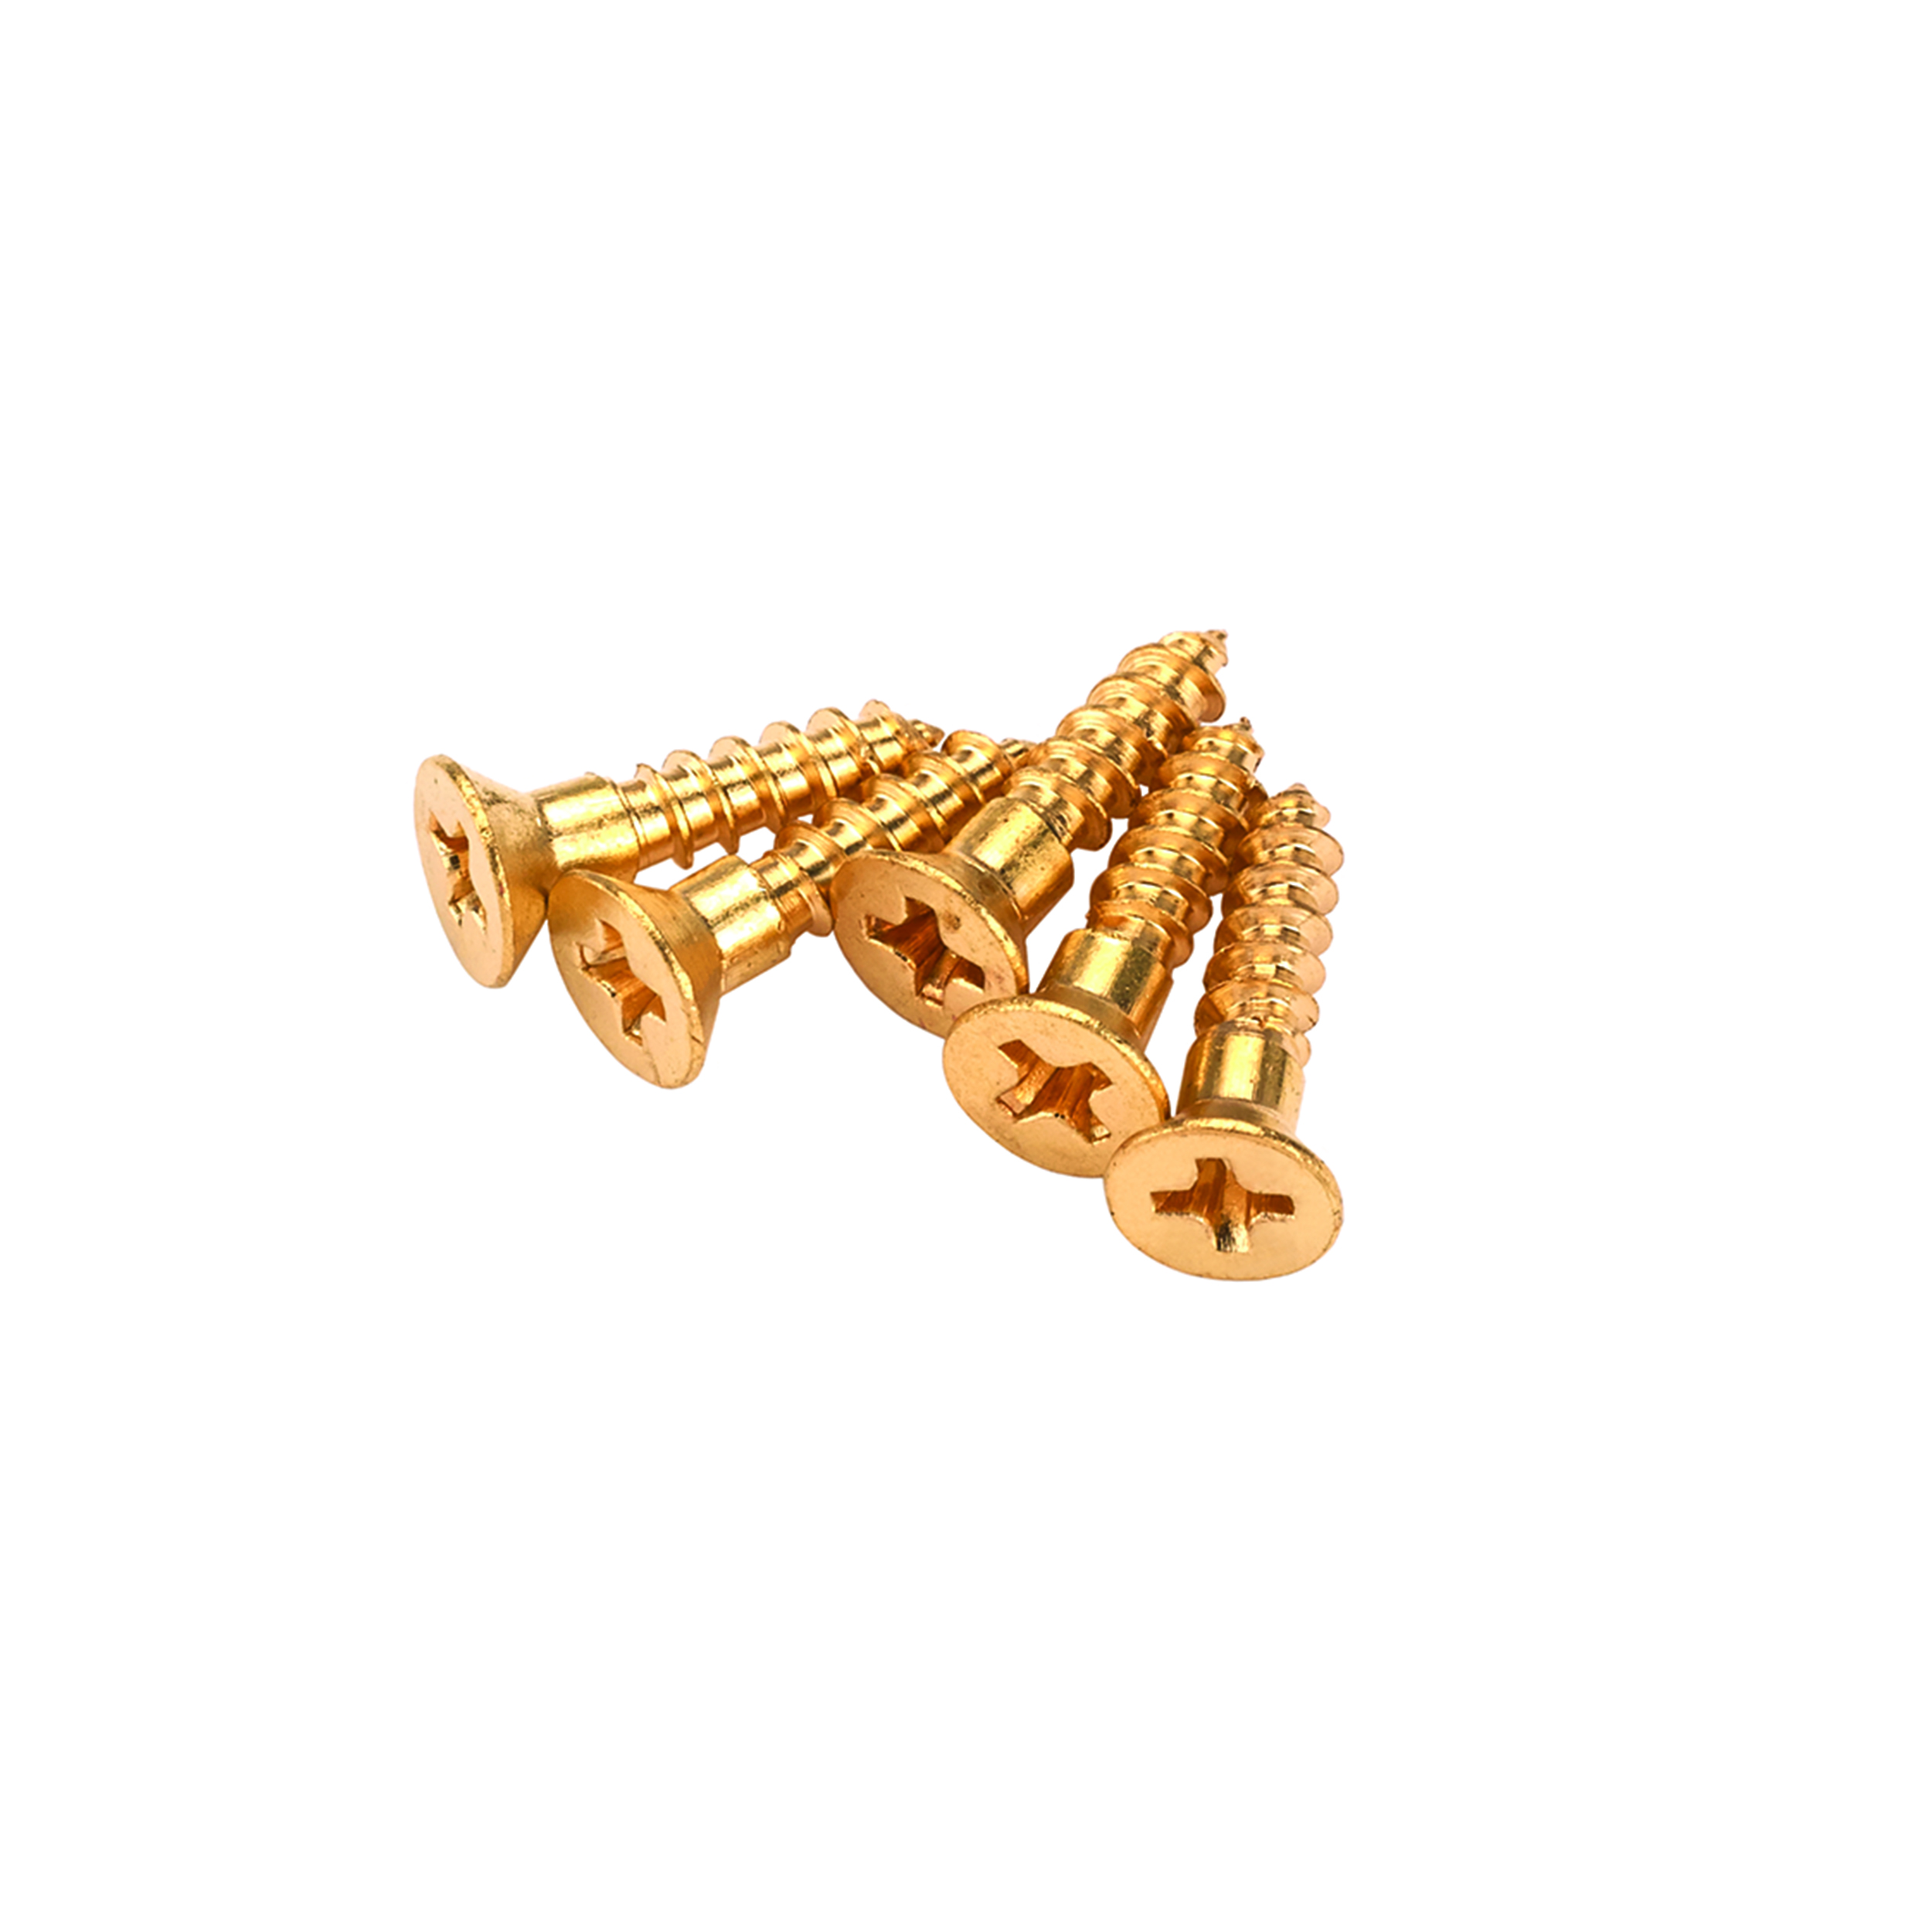 Solid Brass Screws #4 X 1/2" Phillips 25-piece